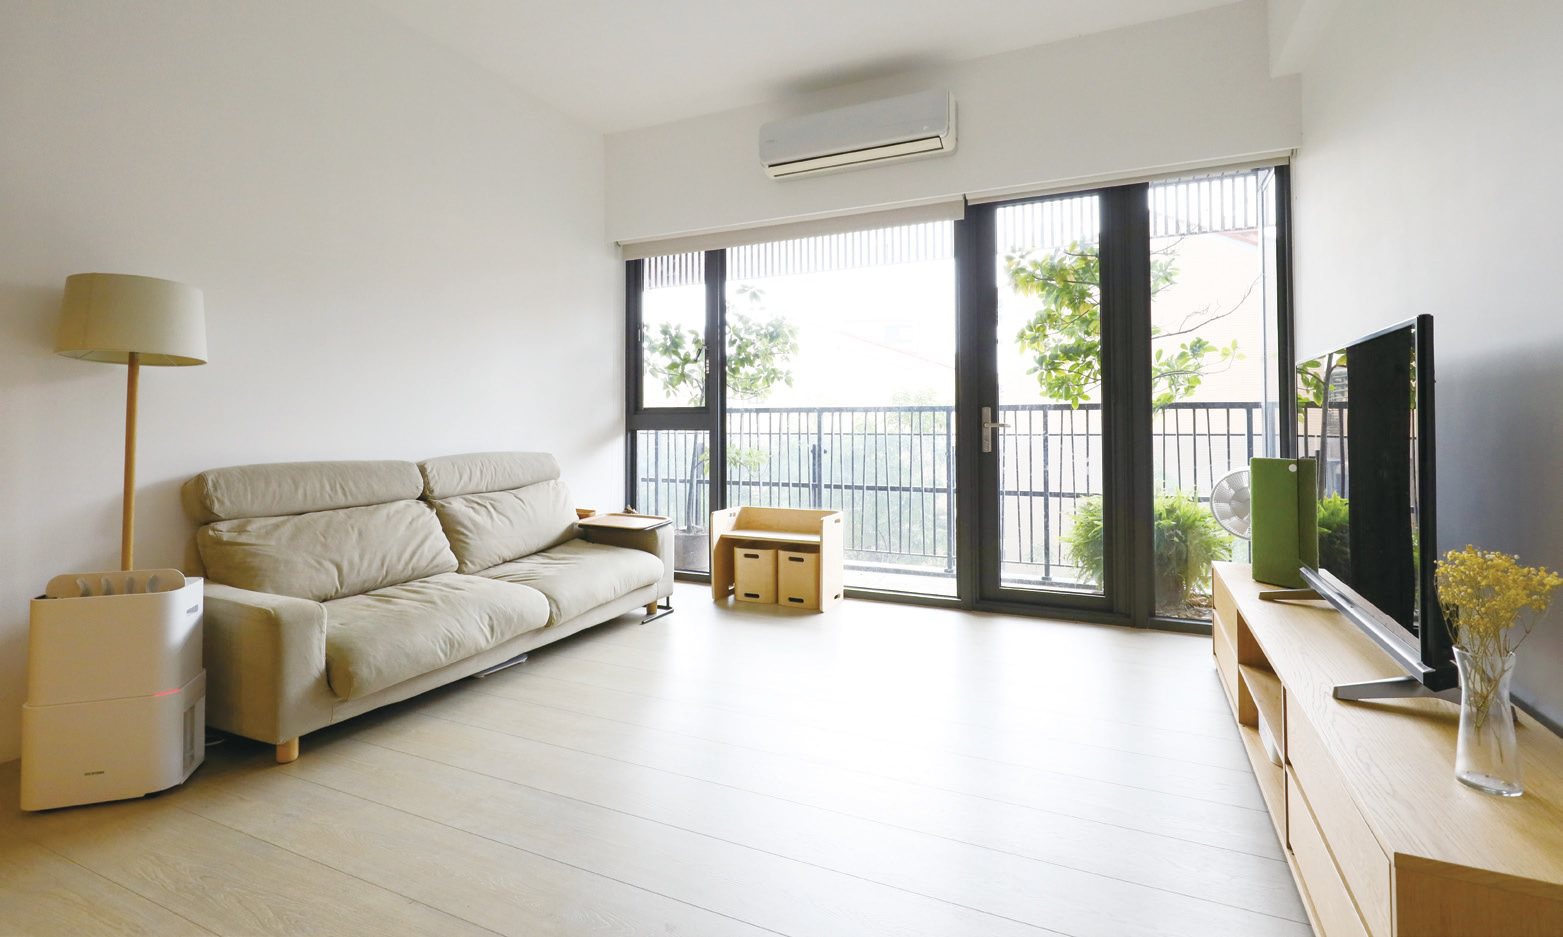 客廳地板淨空，可以靈活運用活動空間。 圖/出版社提供